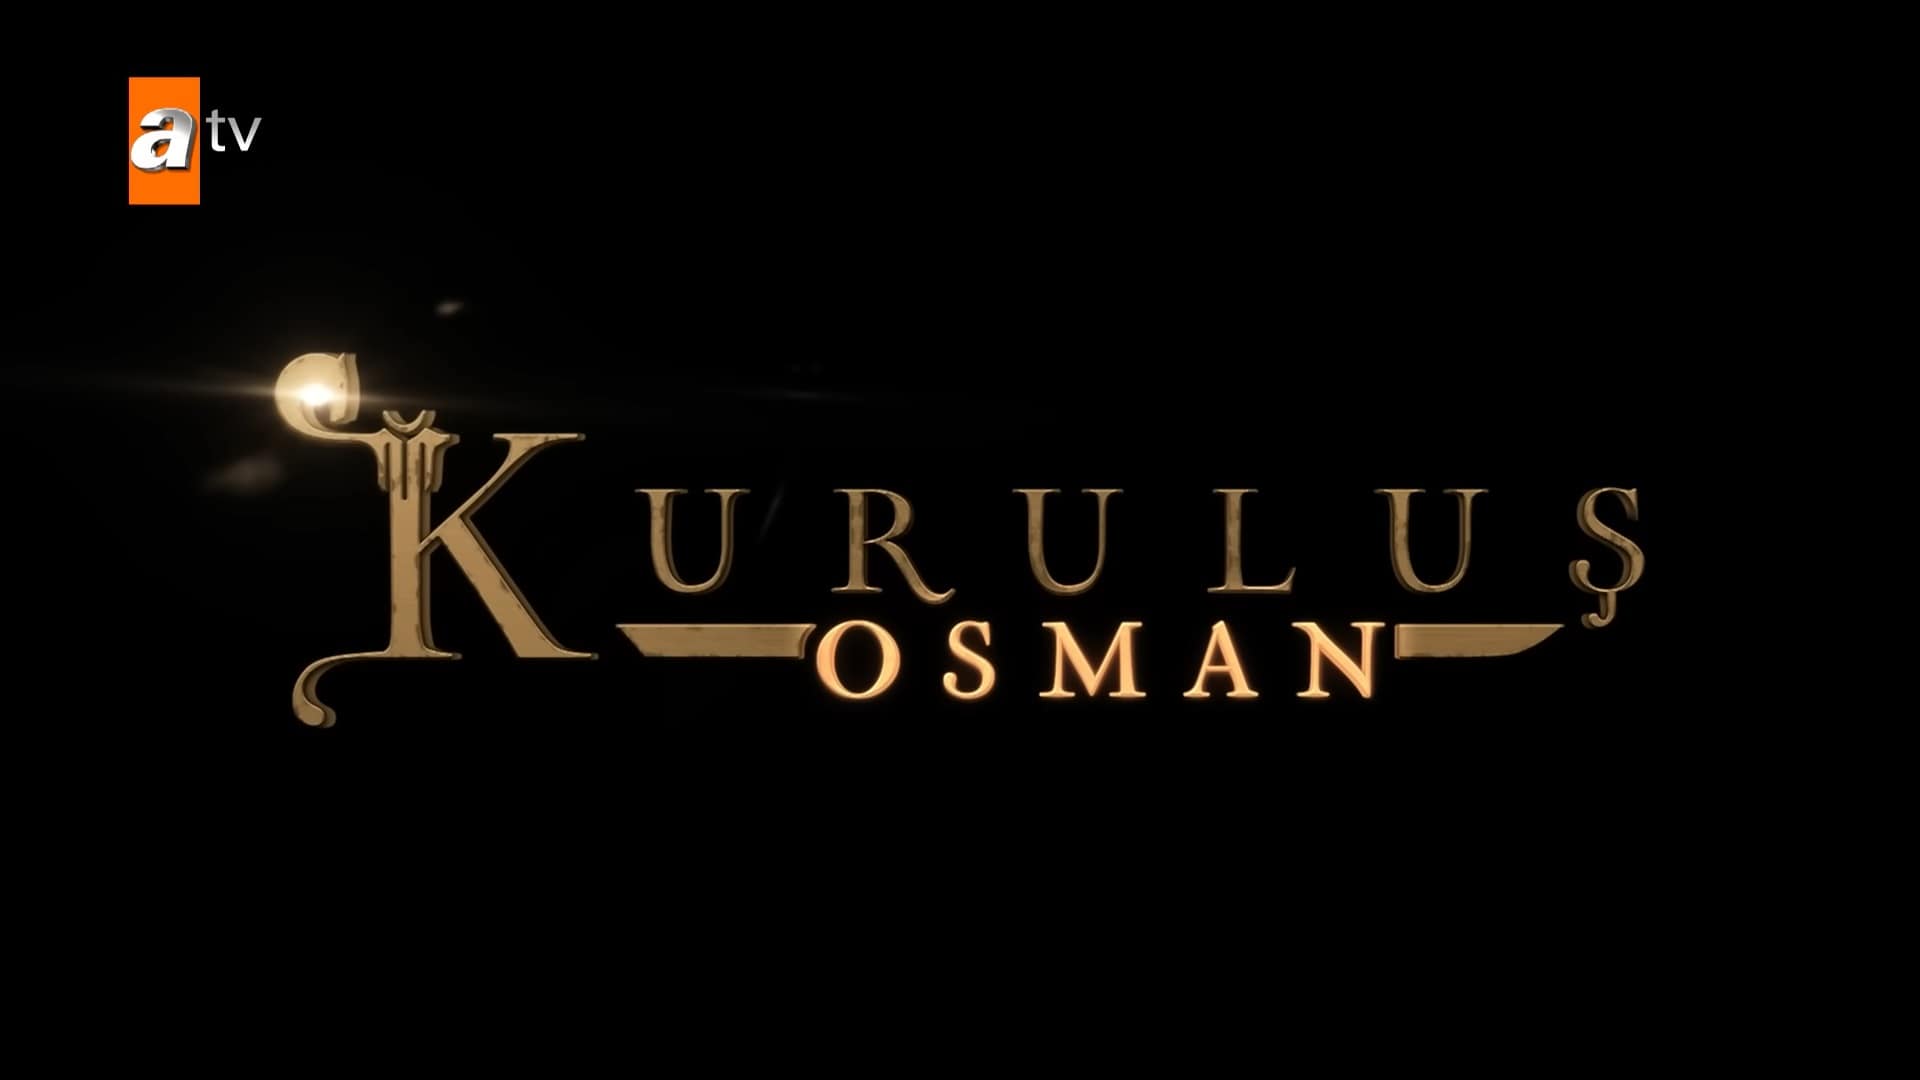 Kurulus osman poster